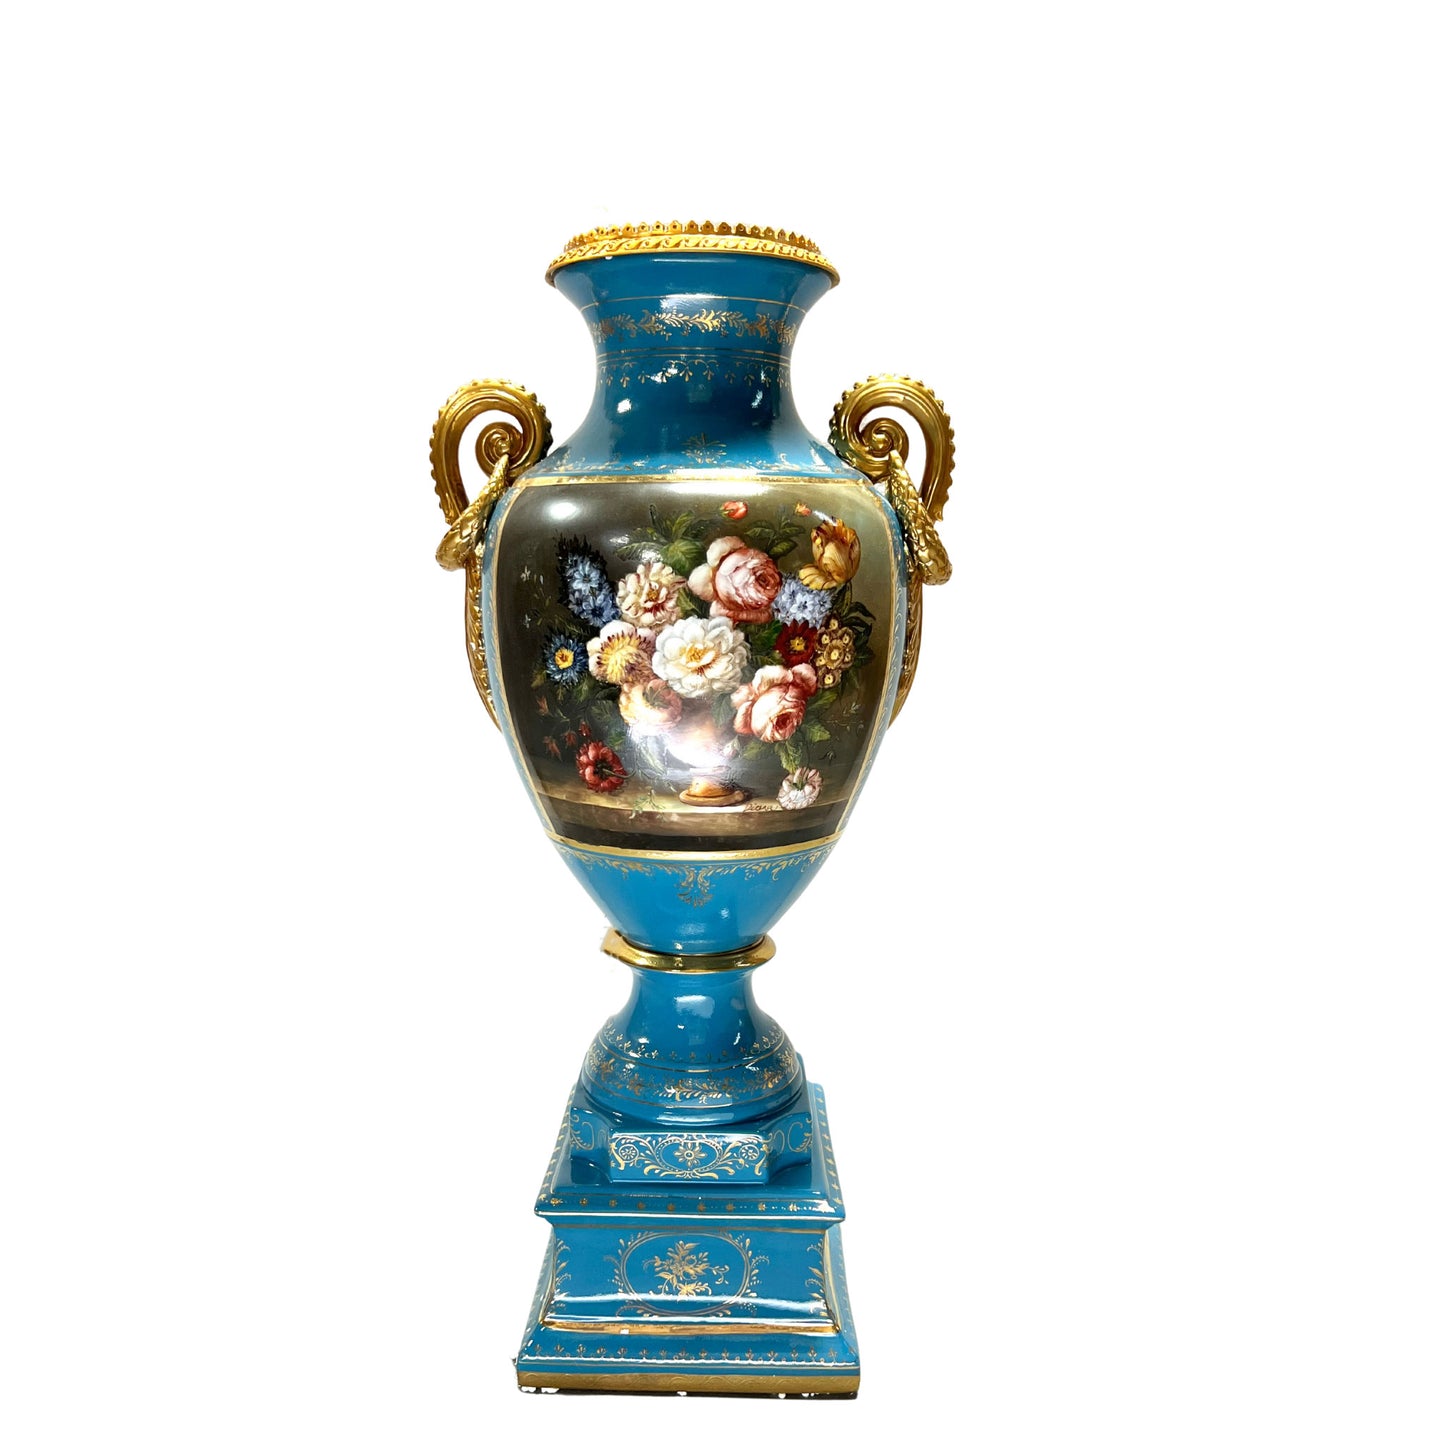 Artistic Elegance: Hand-Painted Porcelain Vase